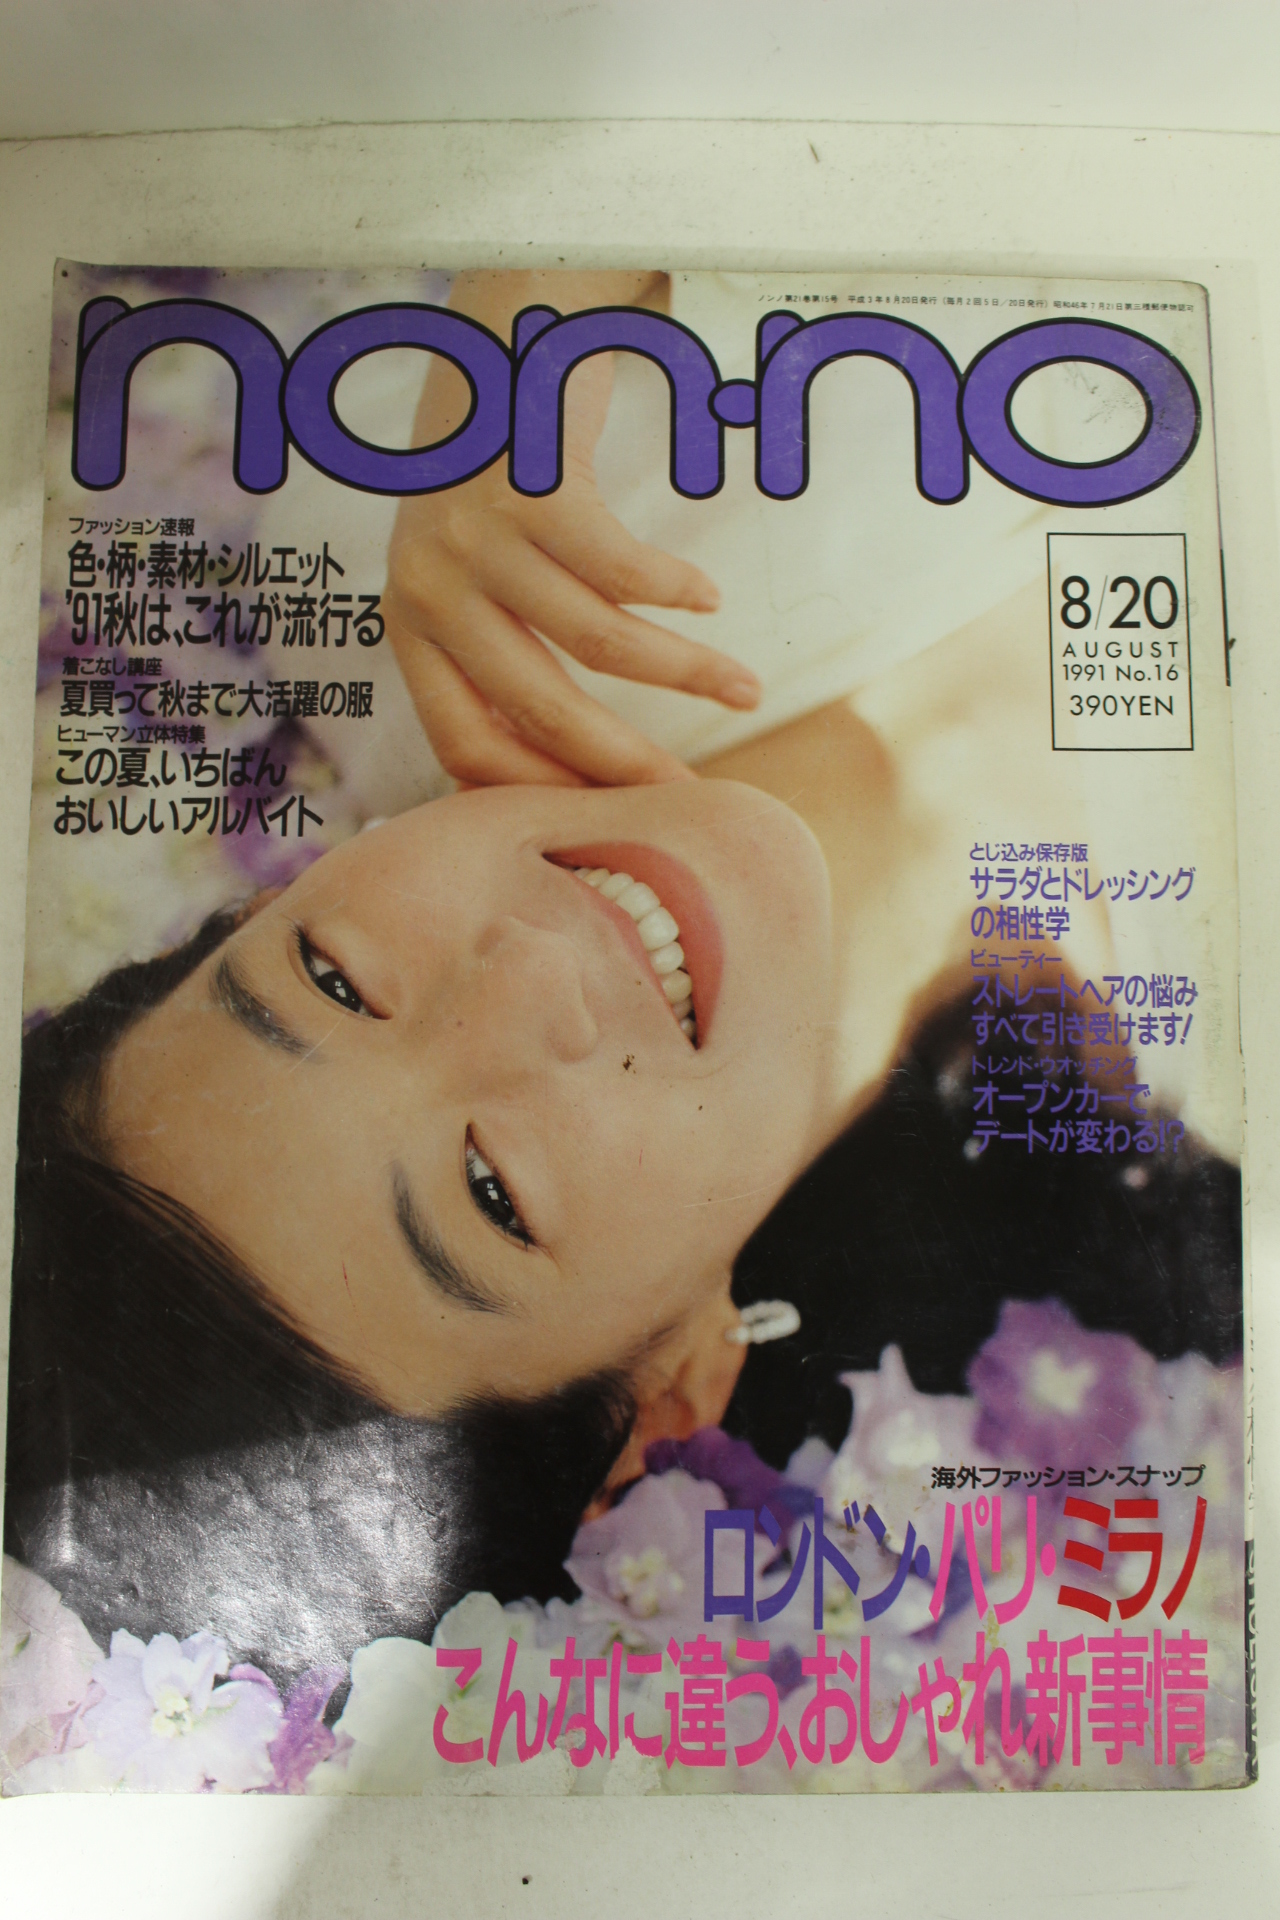 1991년 일본잡지